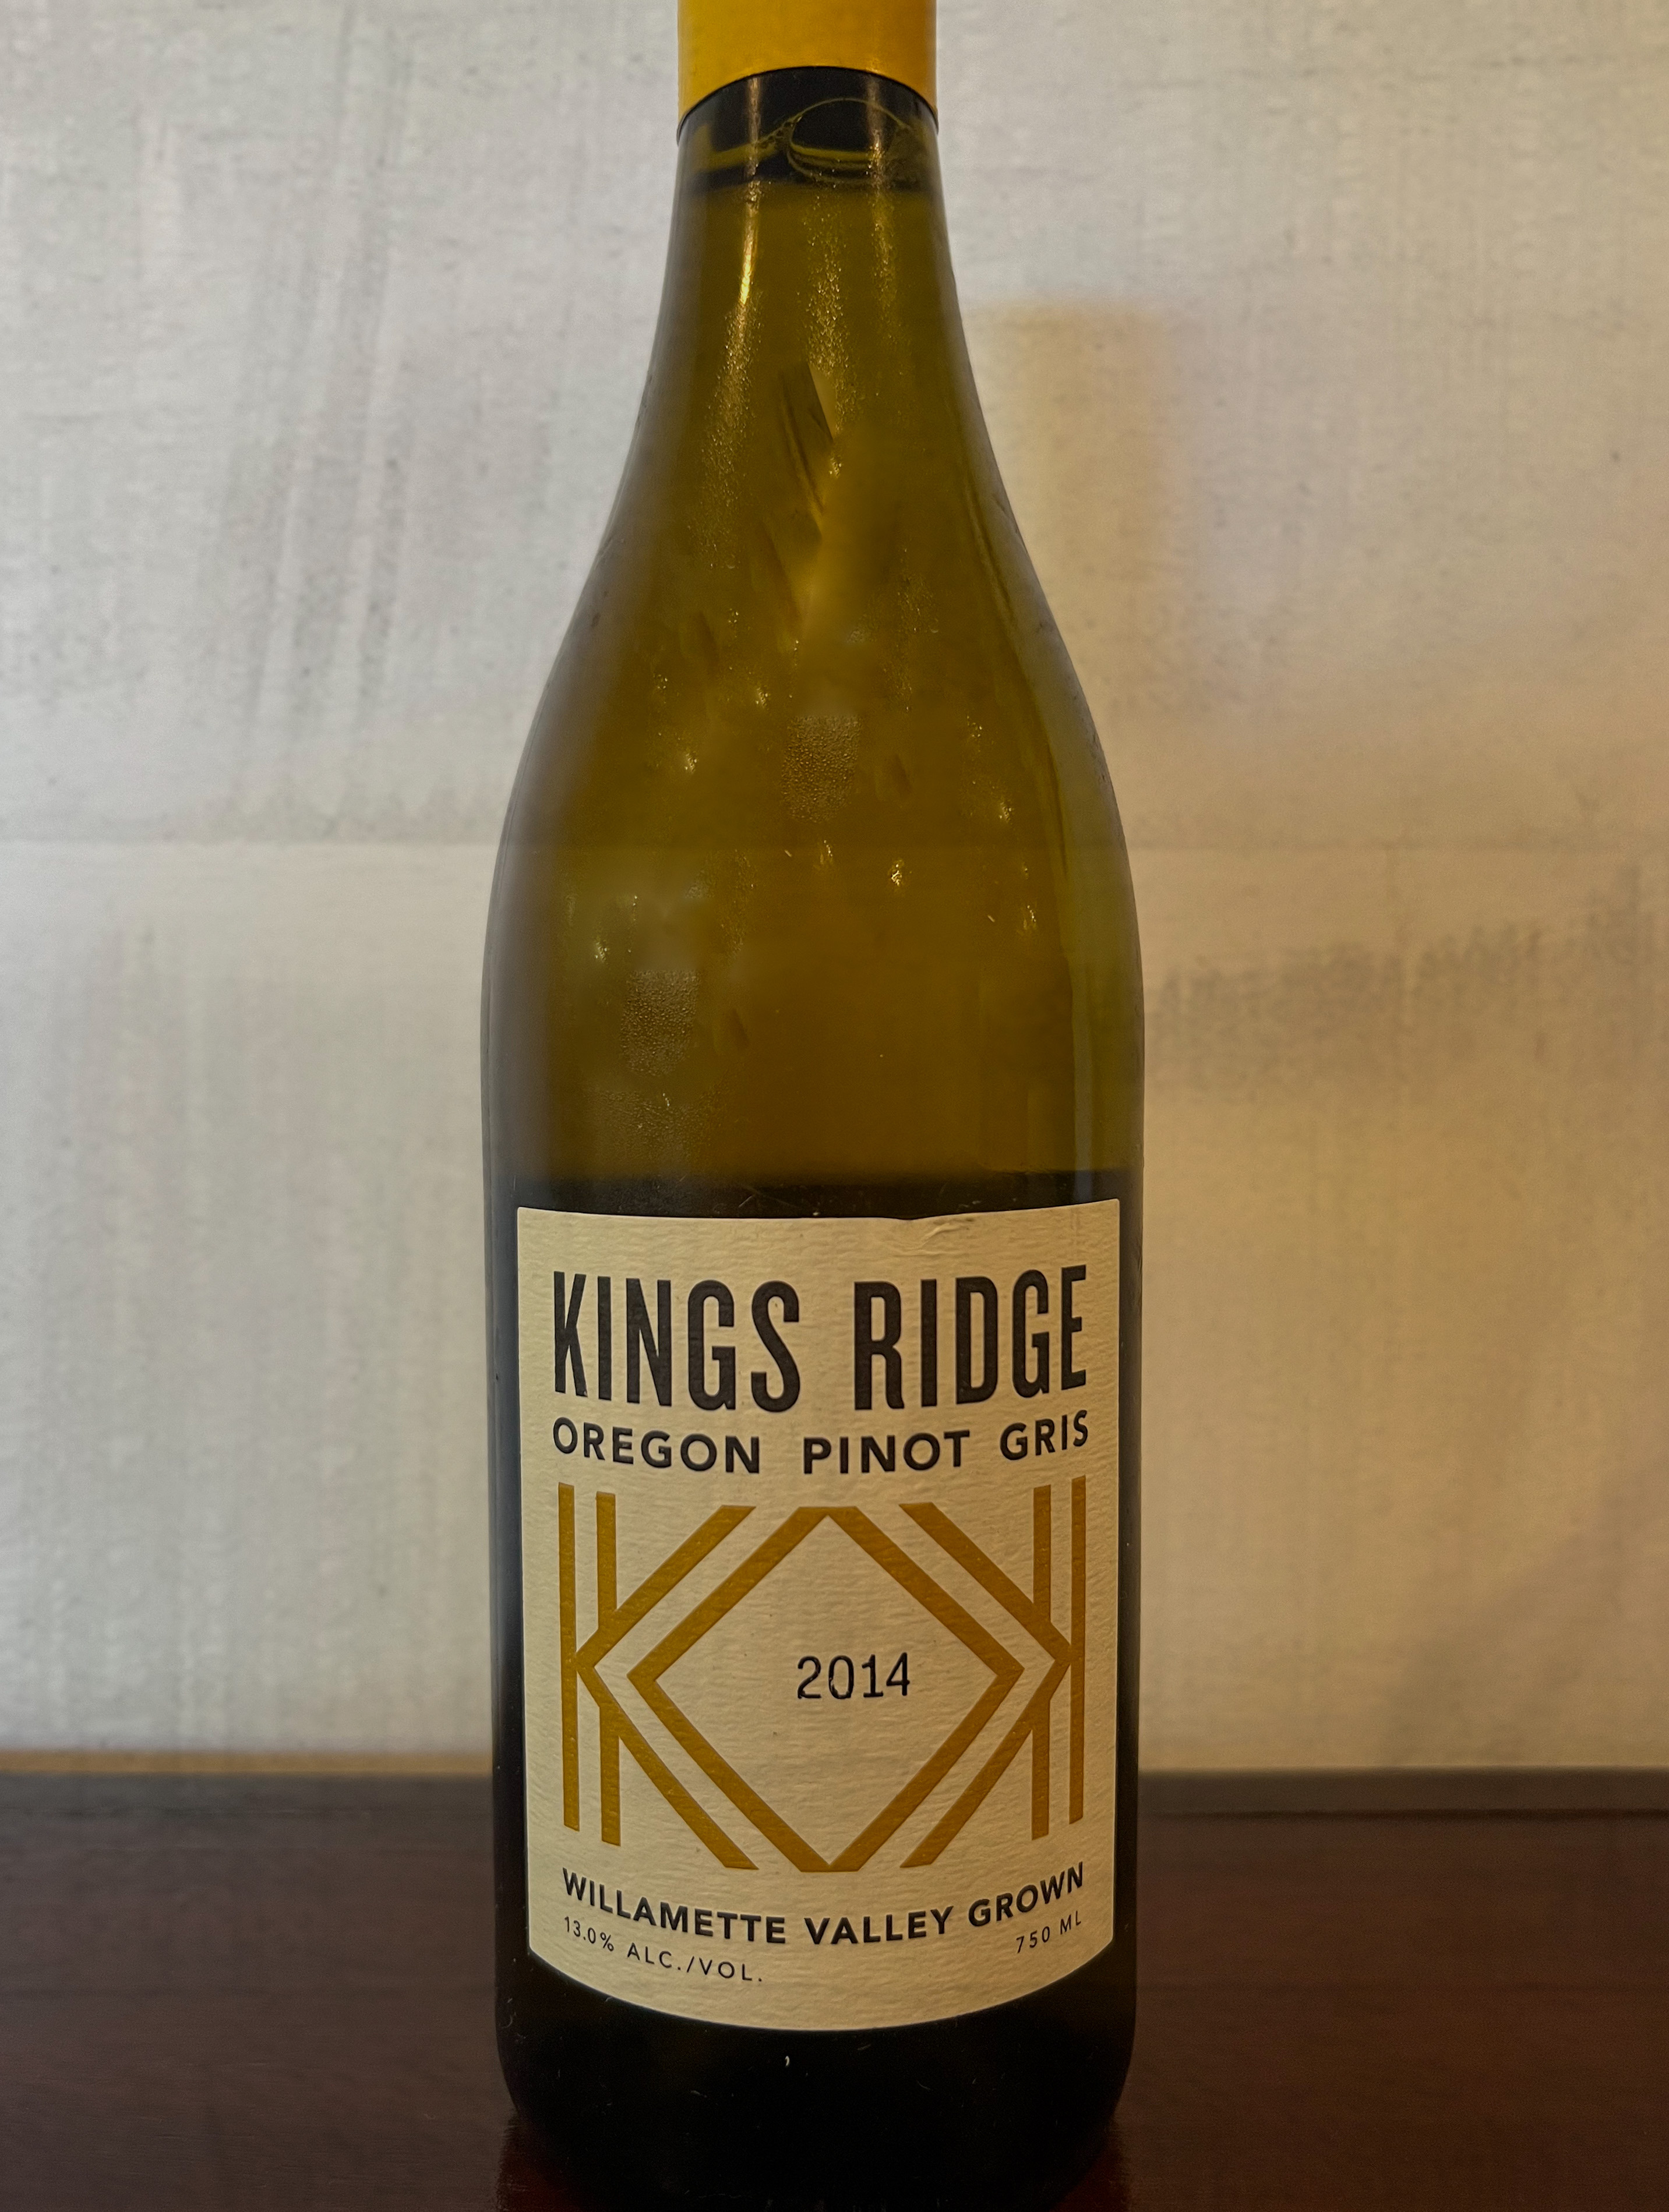 Kings Ridge Oregon Pinot Gris 2014